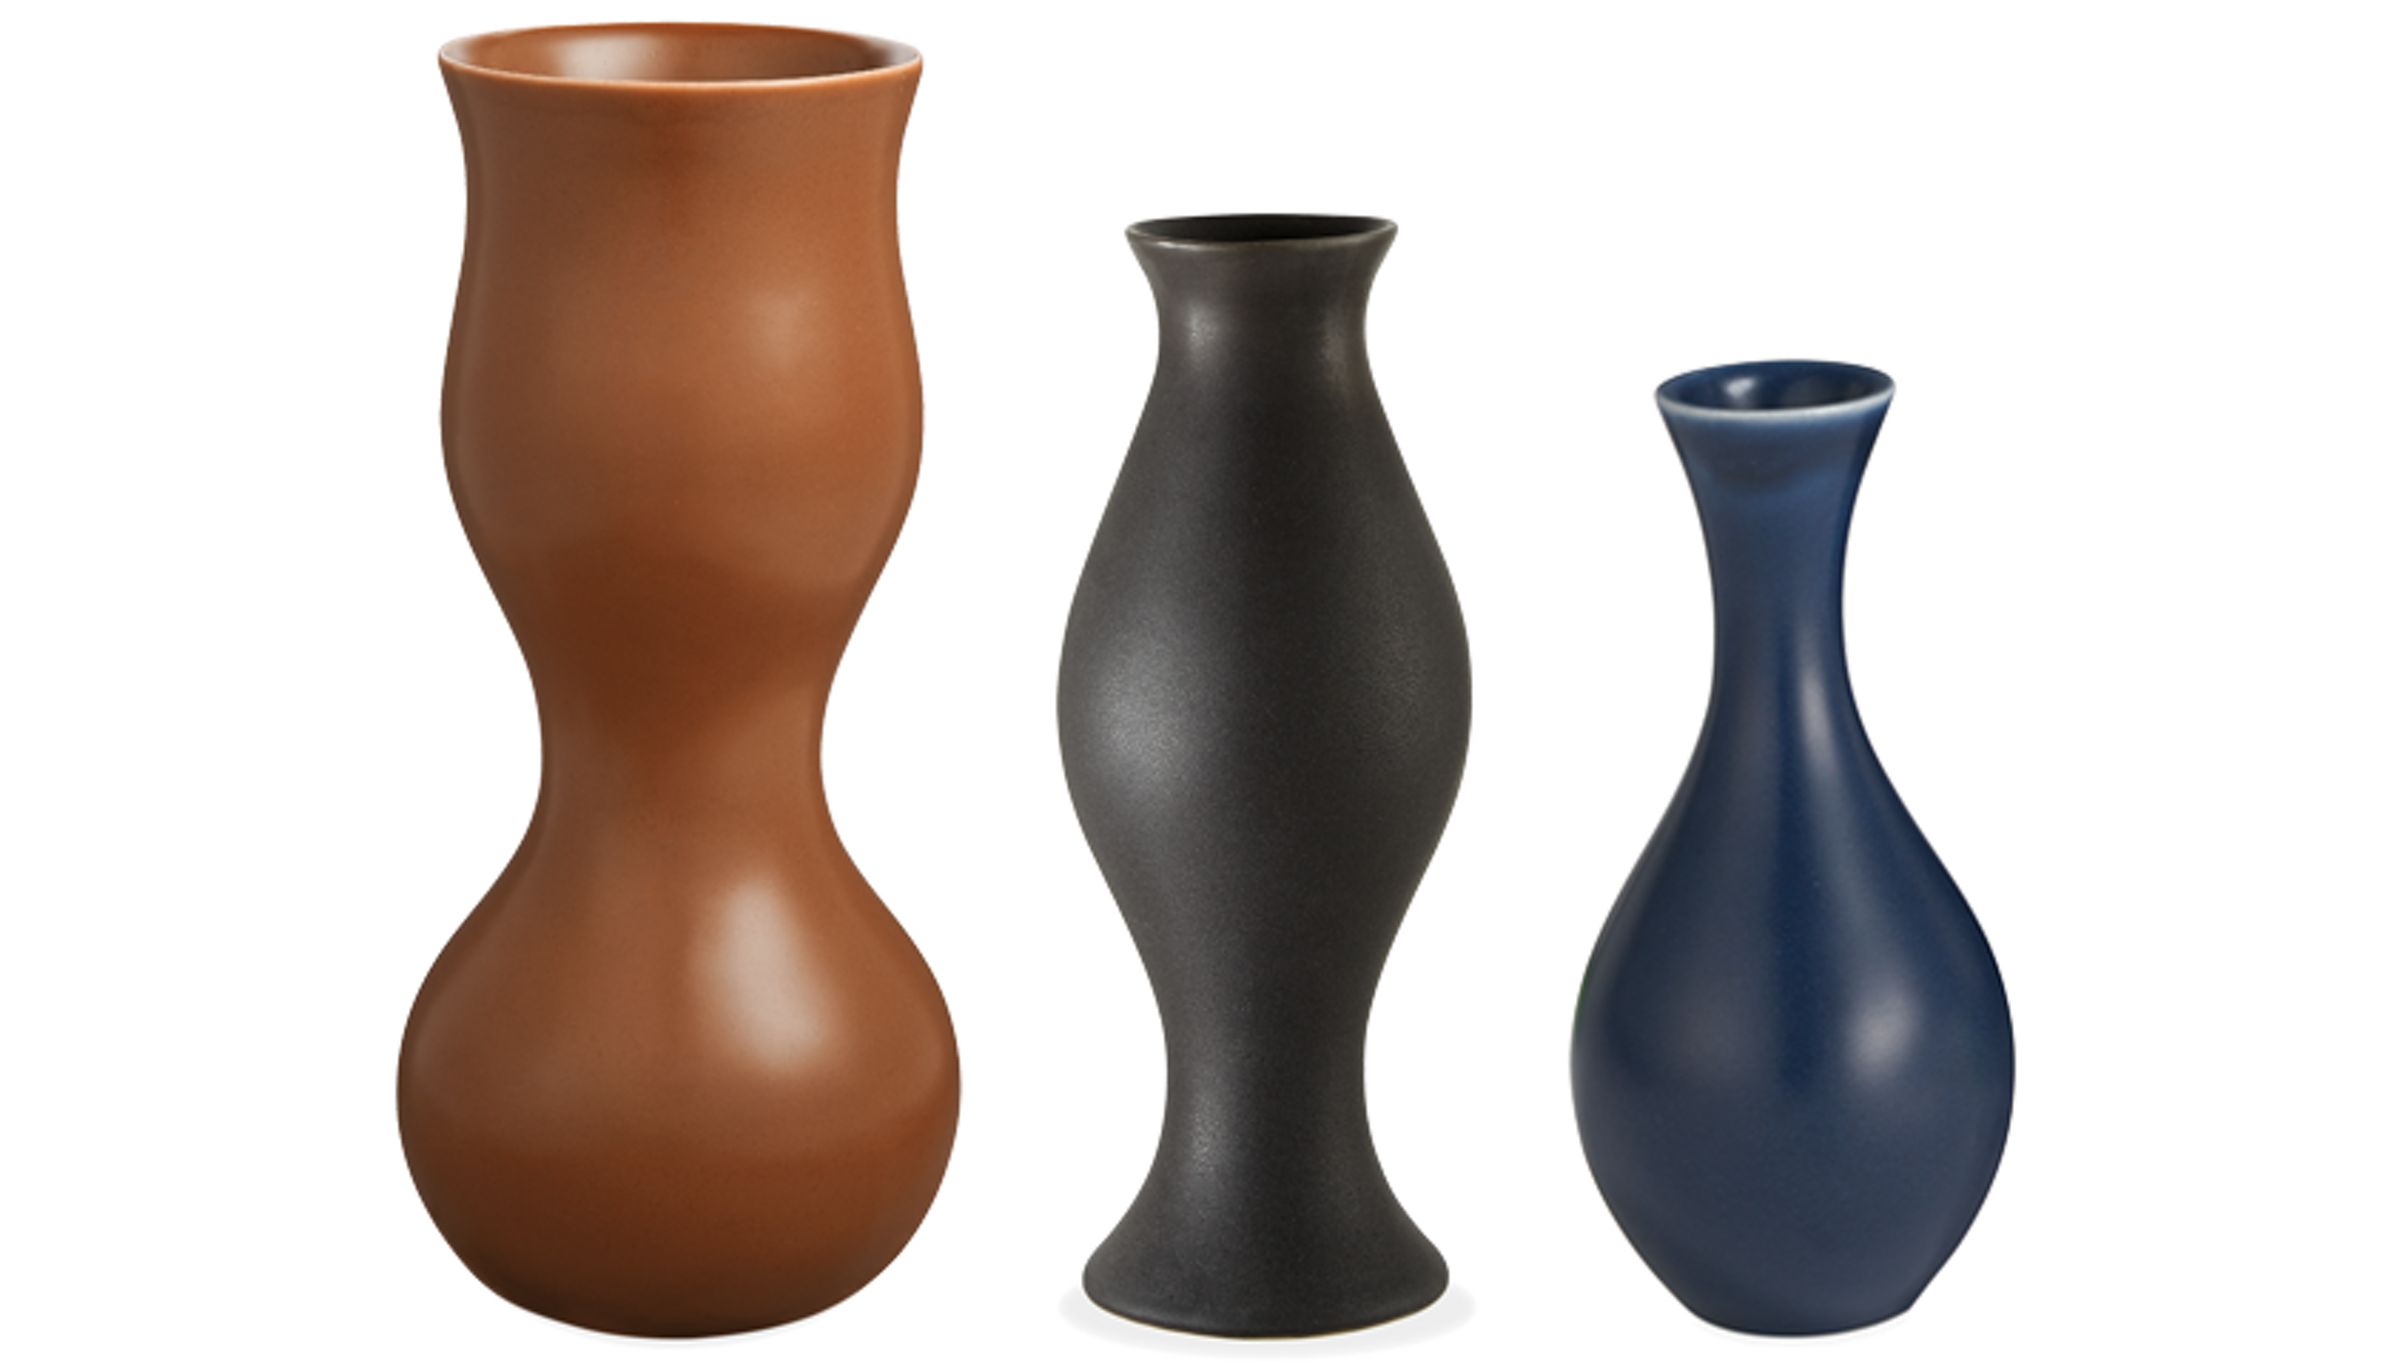 Vases & Bowls